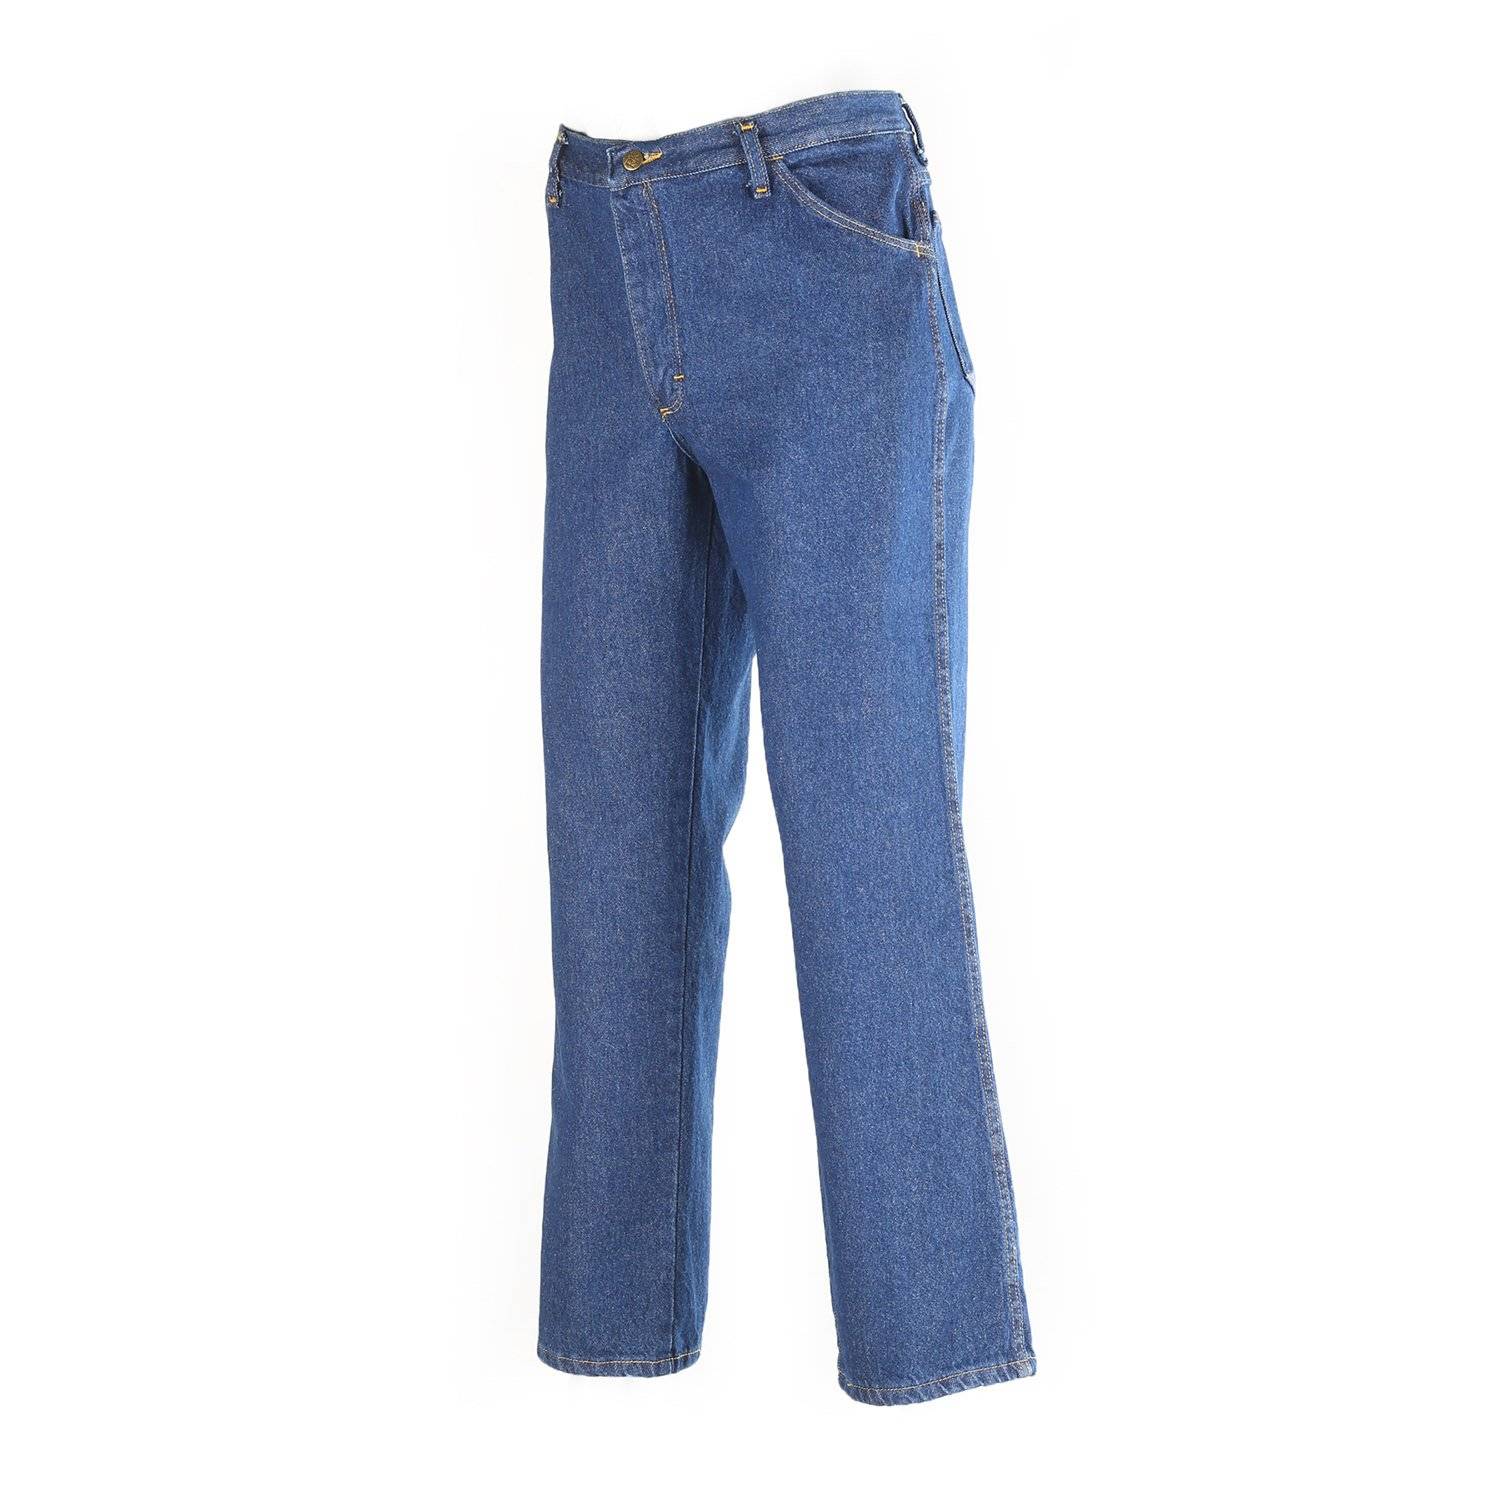 Red Kap Men's Pre-Washed Indigo Denim Jeans